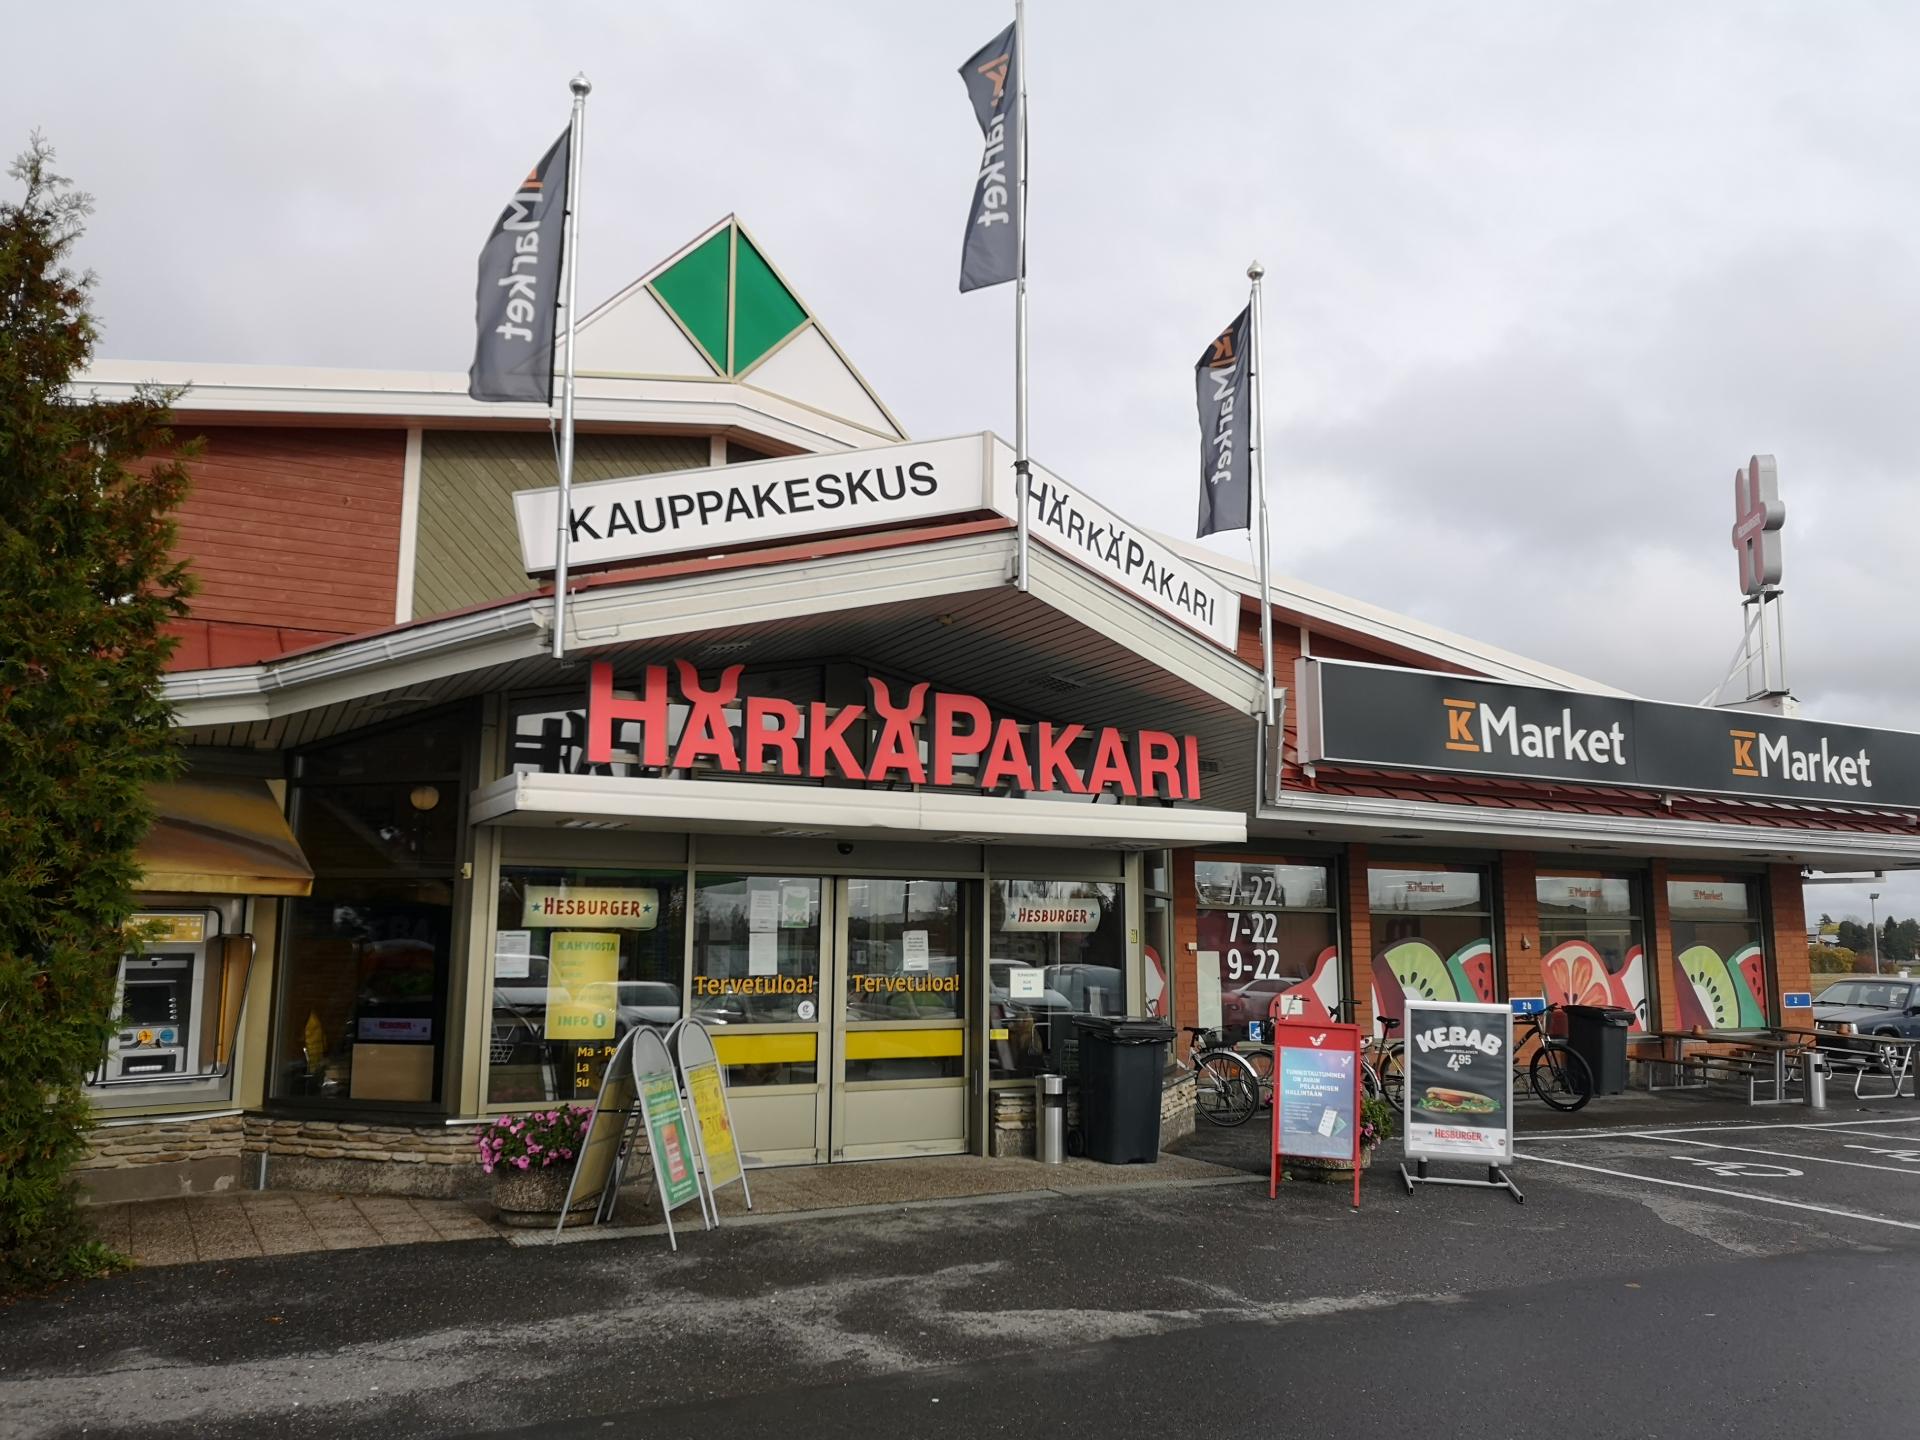 K-Market Härkäpakari, Huittinen - Härkäpakari